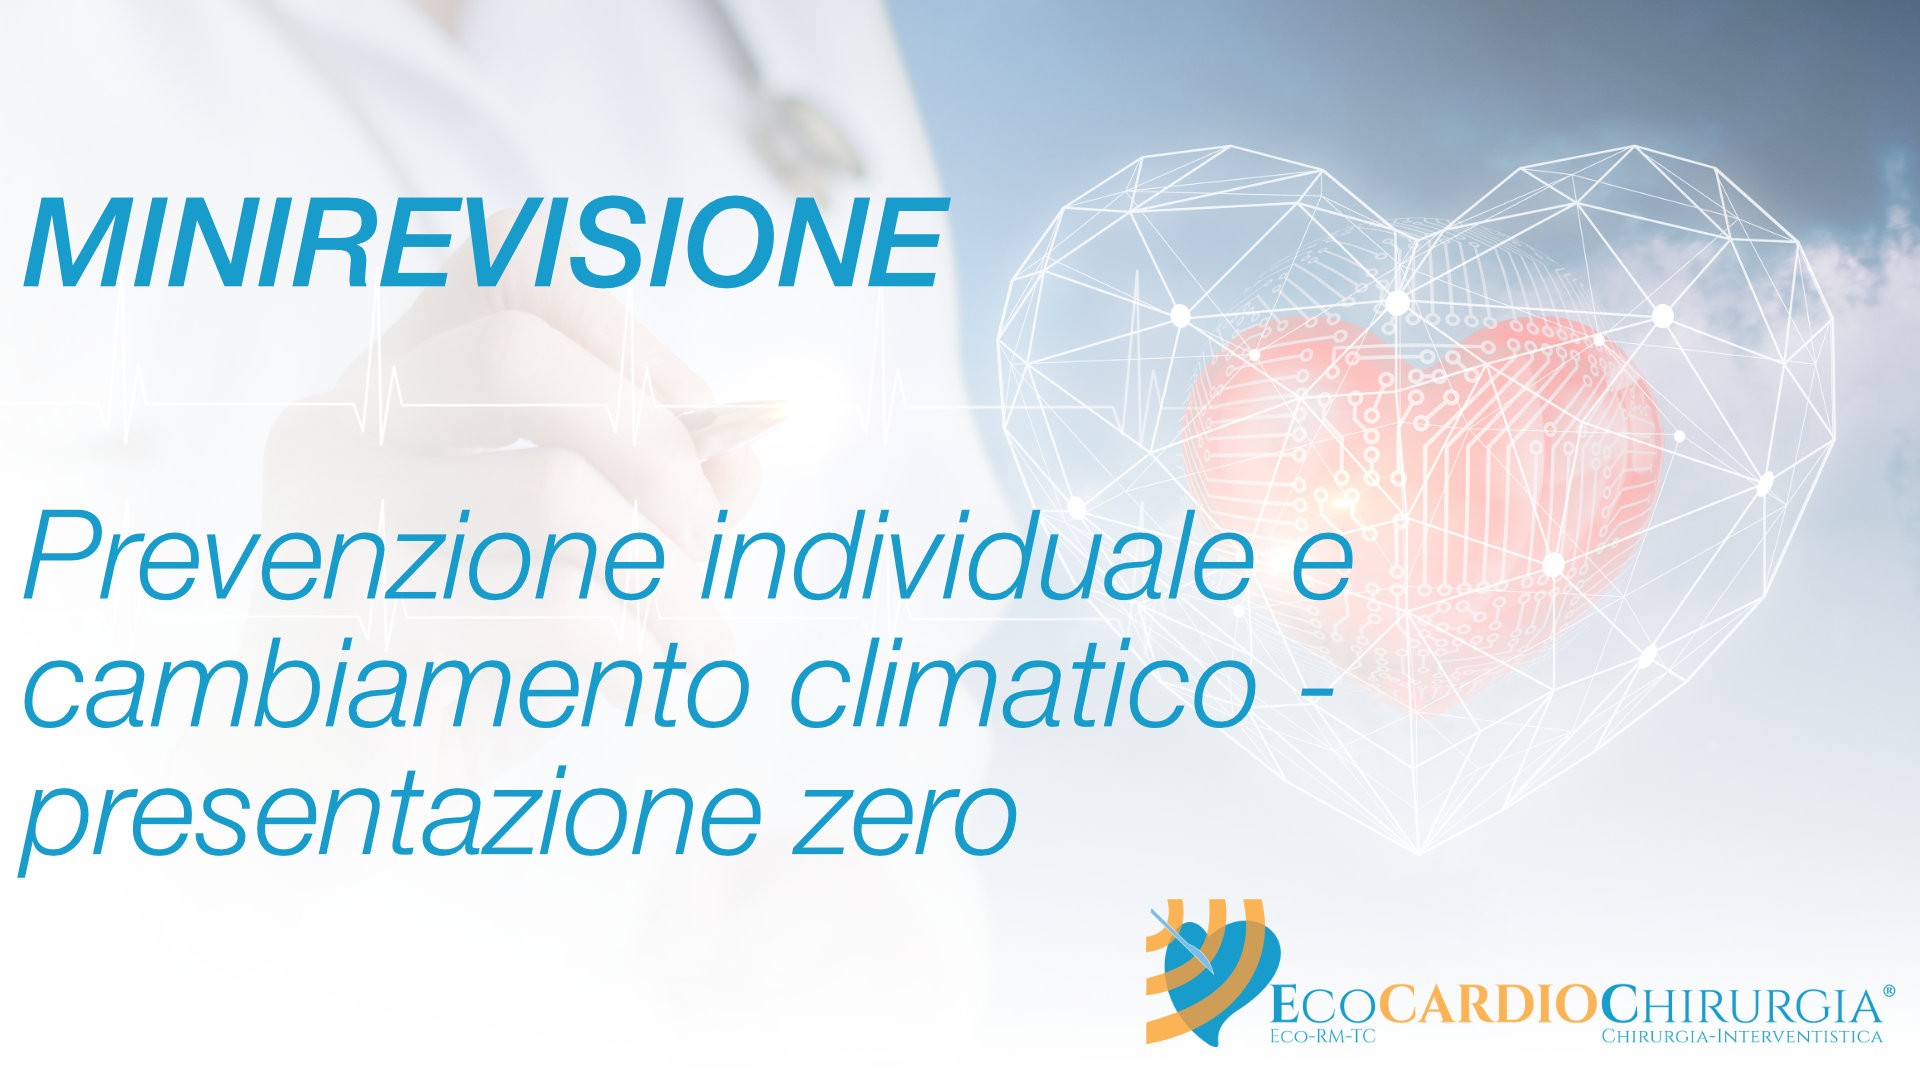 MINIREVISIONE - CLINICA - Prevenzione individuale e cambiamento climatico - presentazione zero